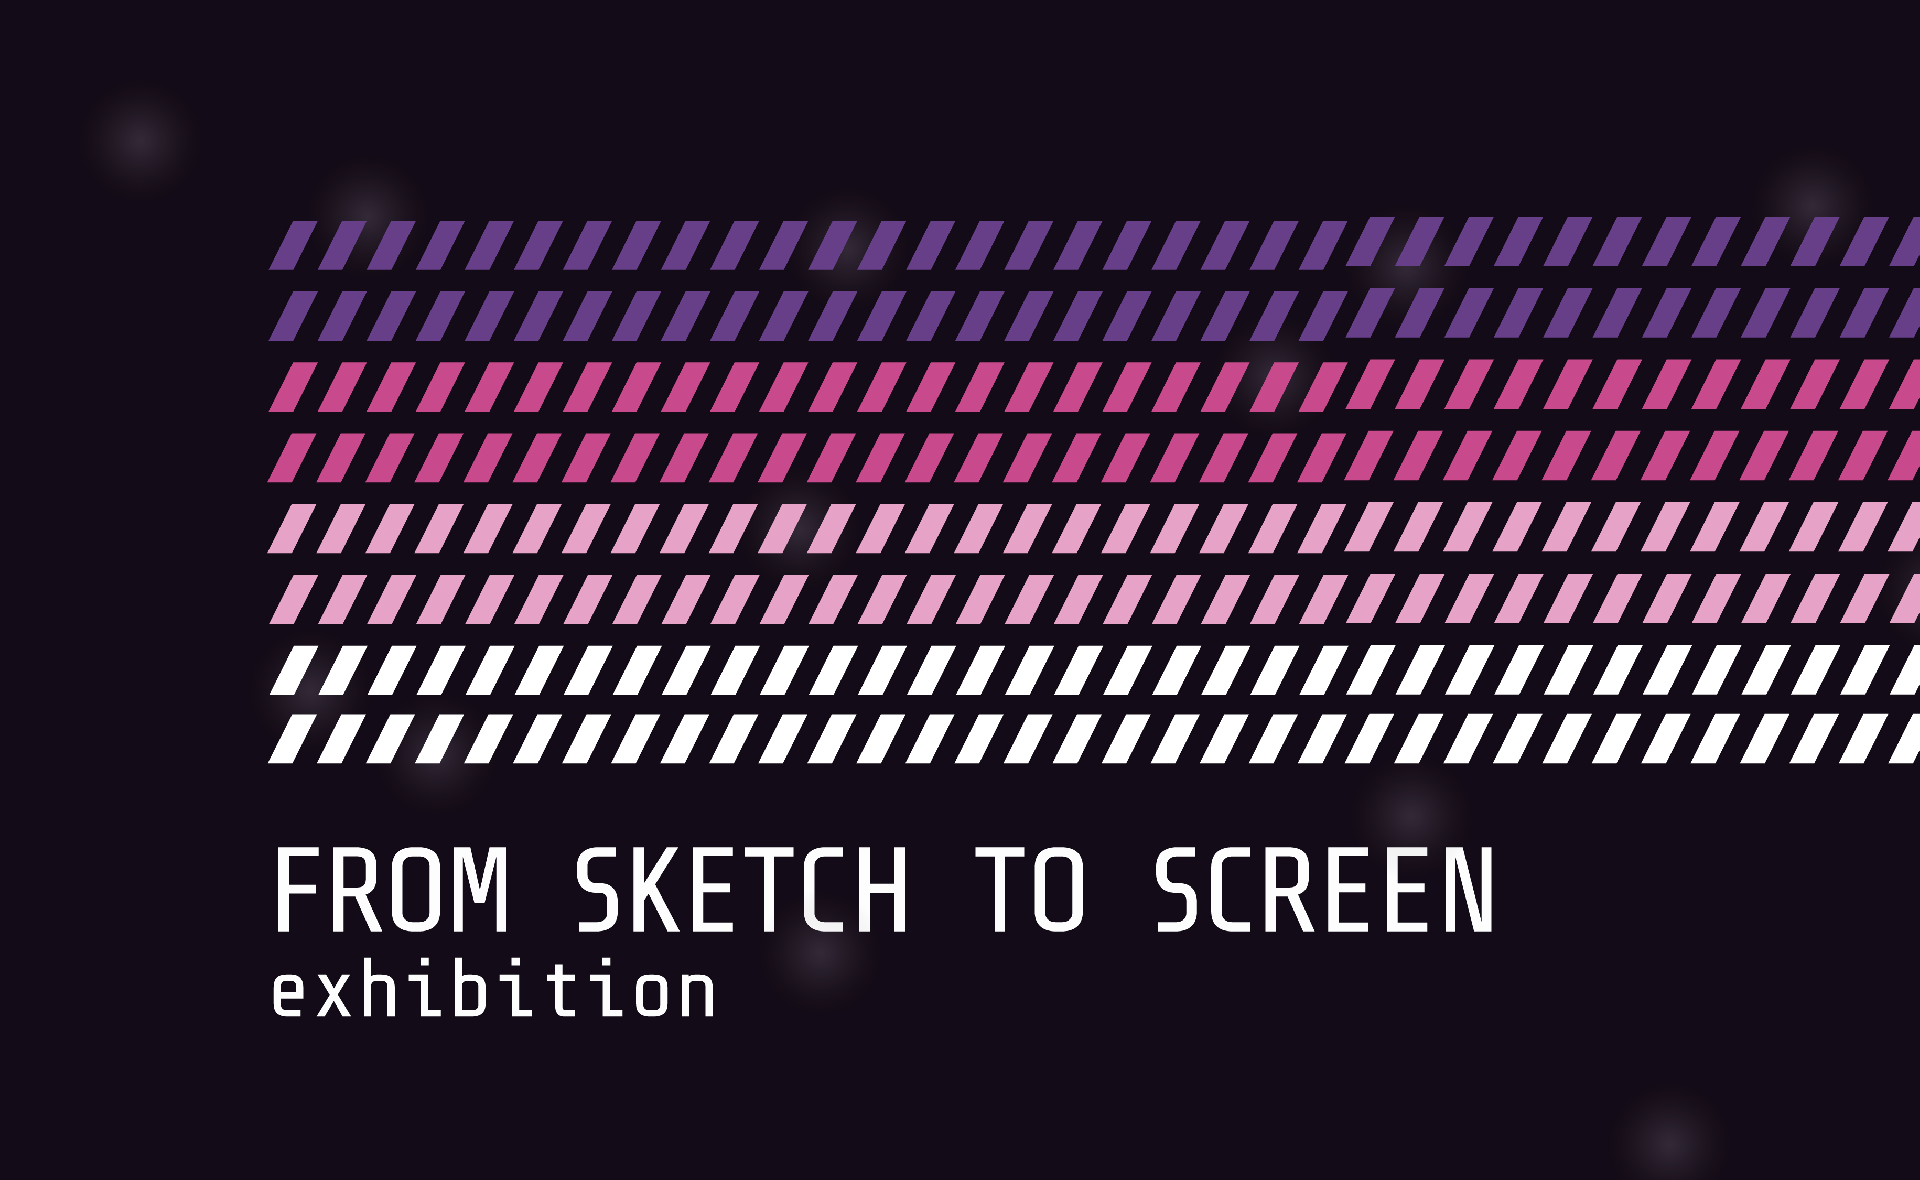 Helsinki Design Week: 
From Sketch to Screen – kiállítás
Artificial Intelligence and Visual Identity – kerekasztal-beszélgetés